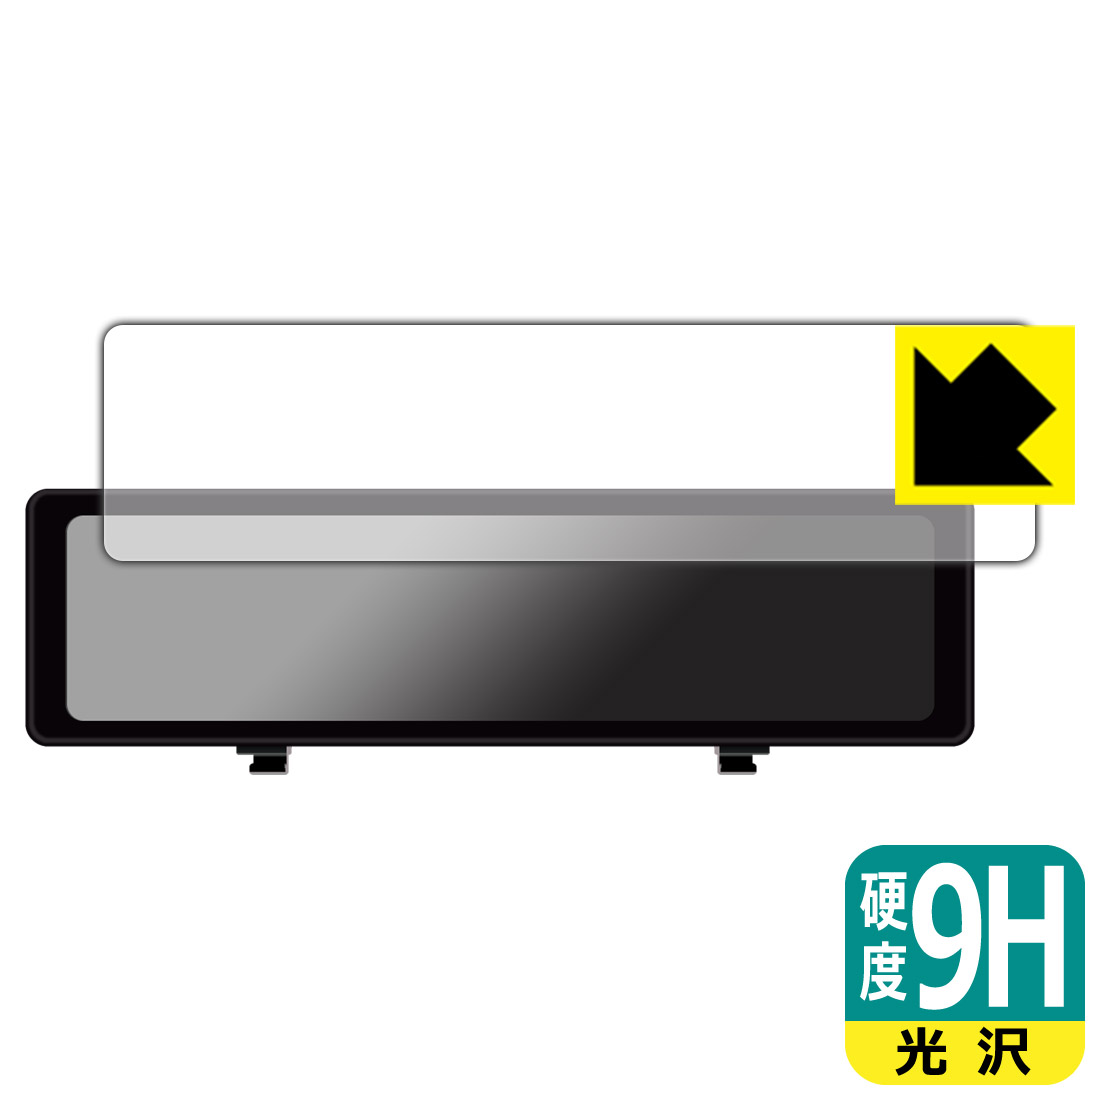 9H高硬度保護フィルム HIGASHI デジタルルームミラー型ドライブレコーダー HM-031SL 日本製 自社製造直販